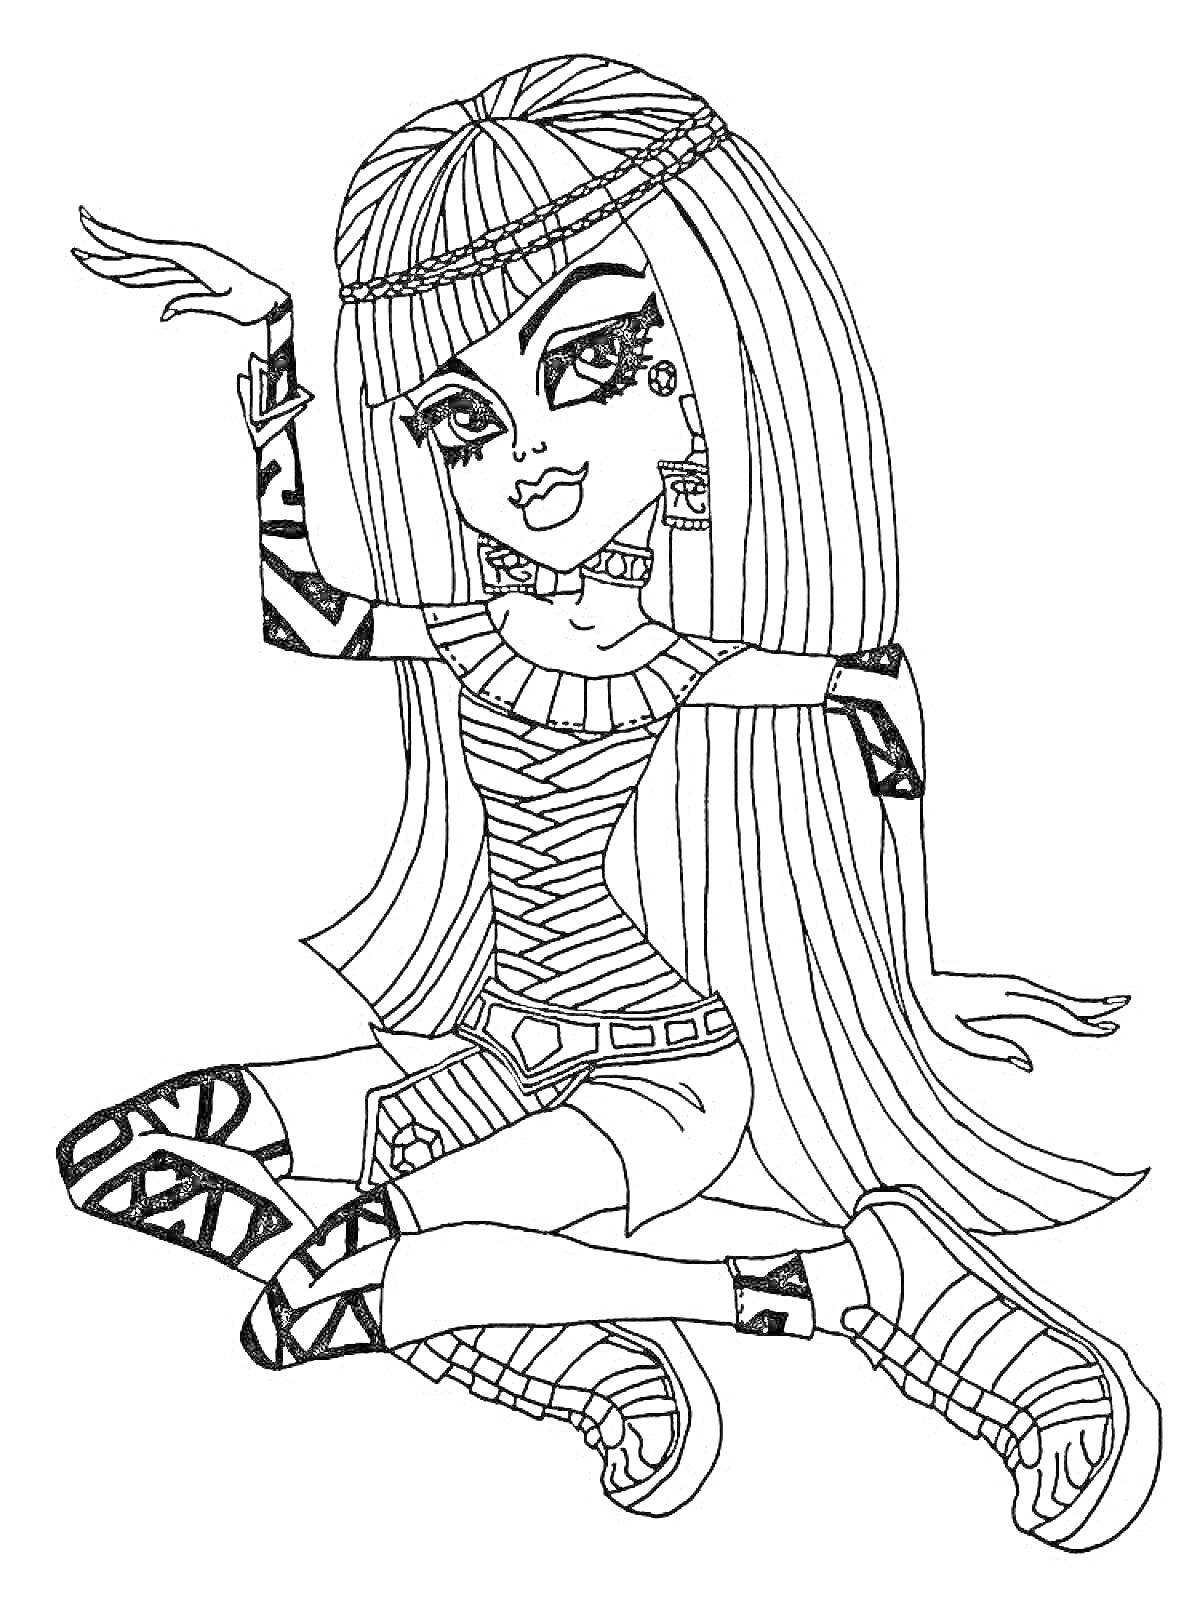 Раскраска Девушка из Монстер Хай с длинными волосами, в полосатом платье, татуировками и в обуви с узором